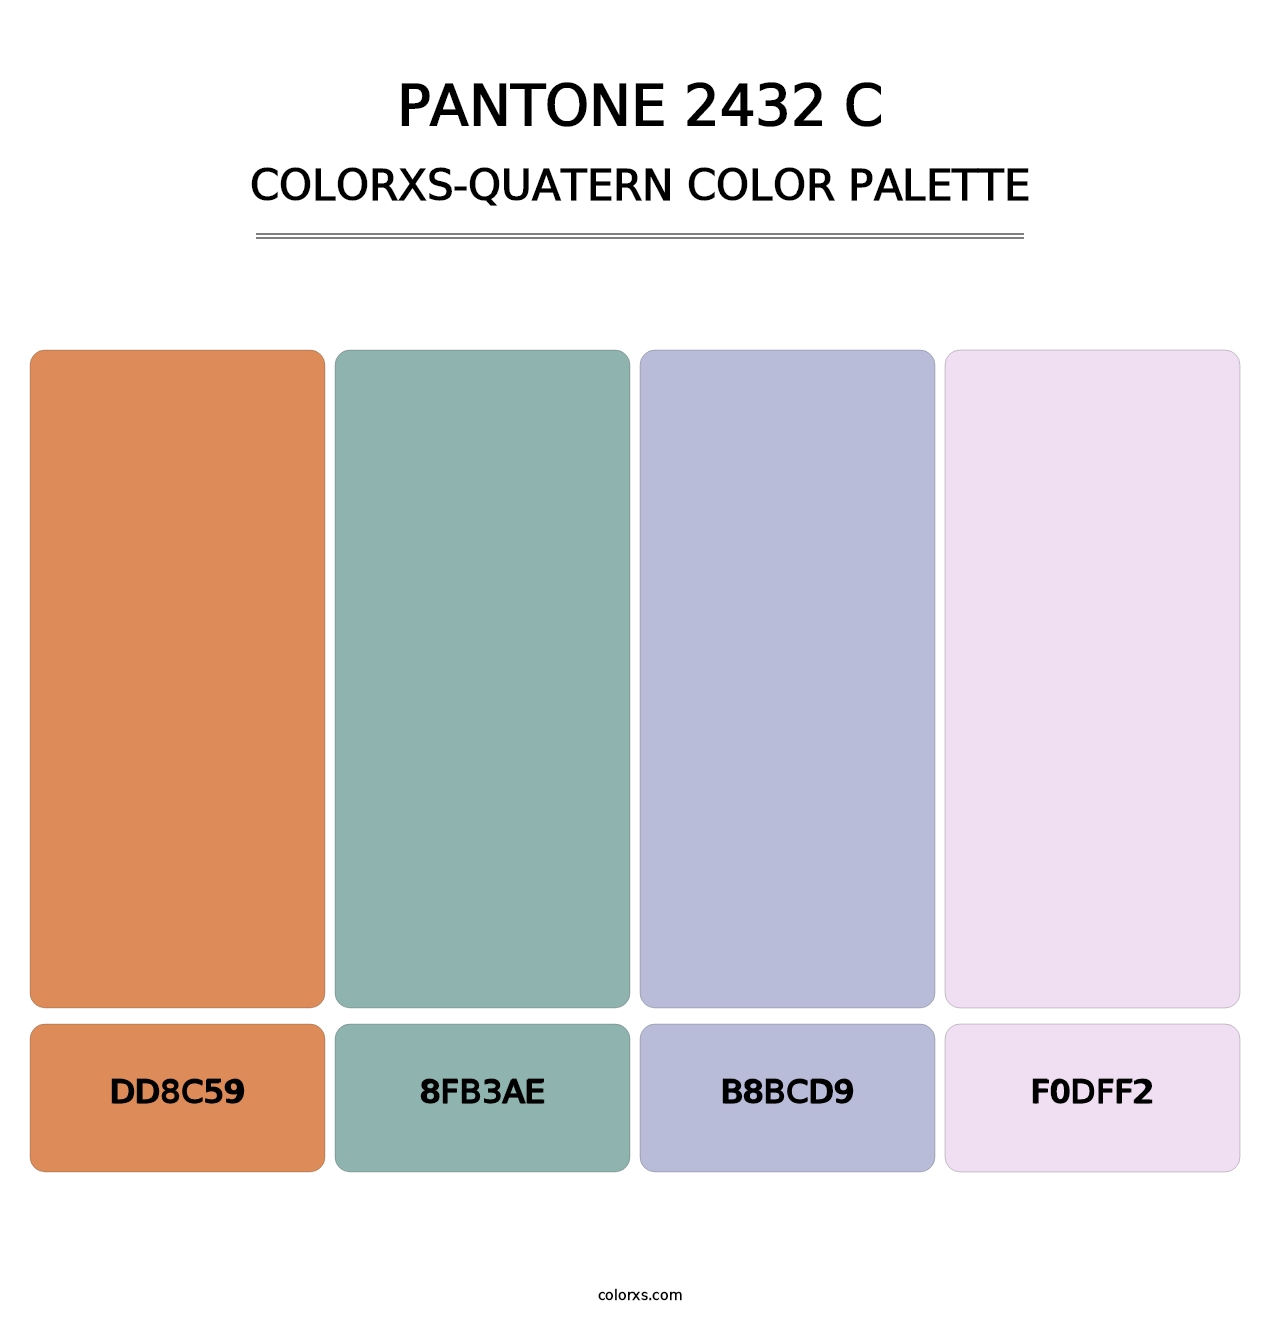 PANTONE 2432 C - Colorxs Quatern Palette